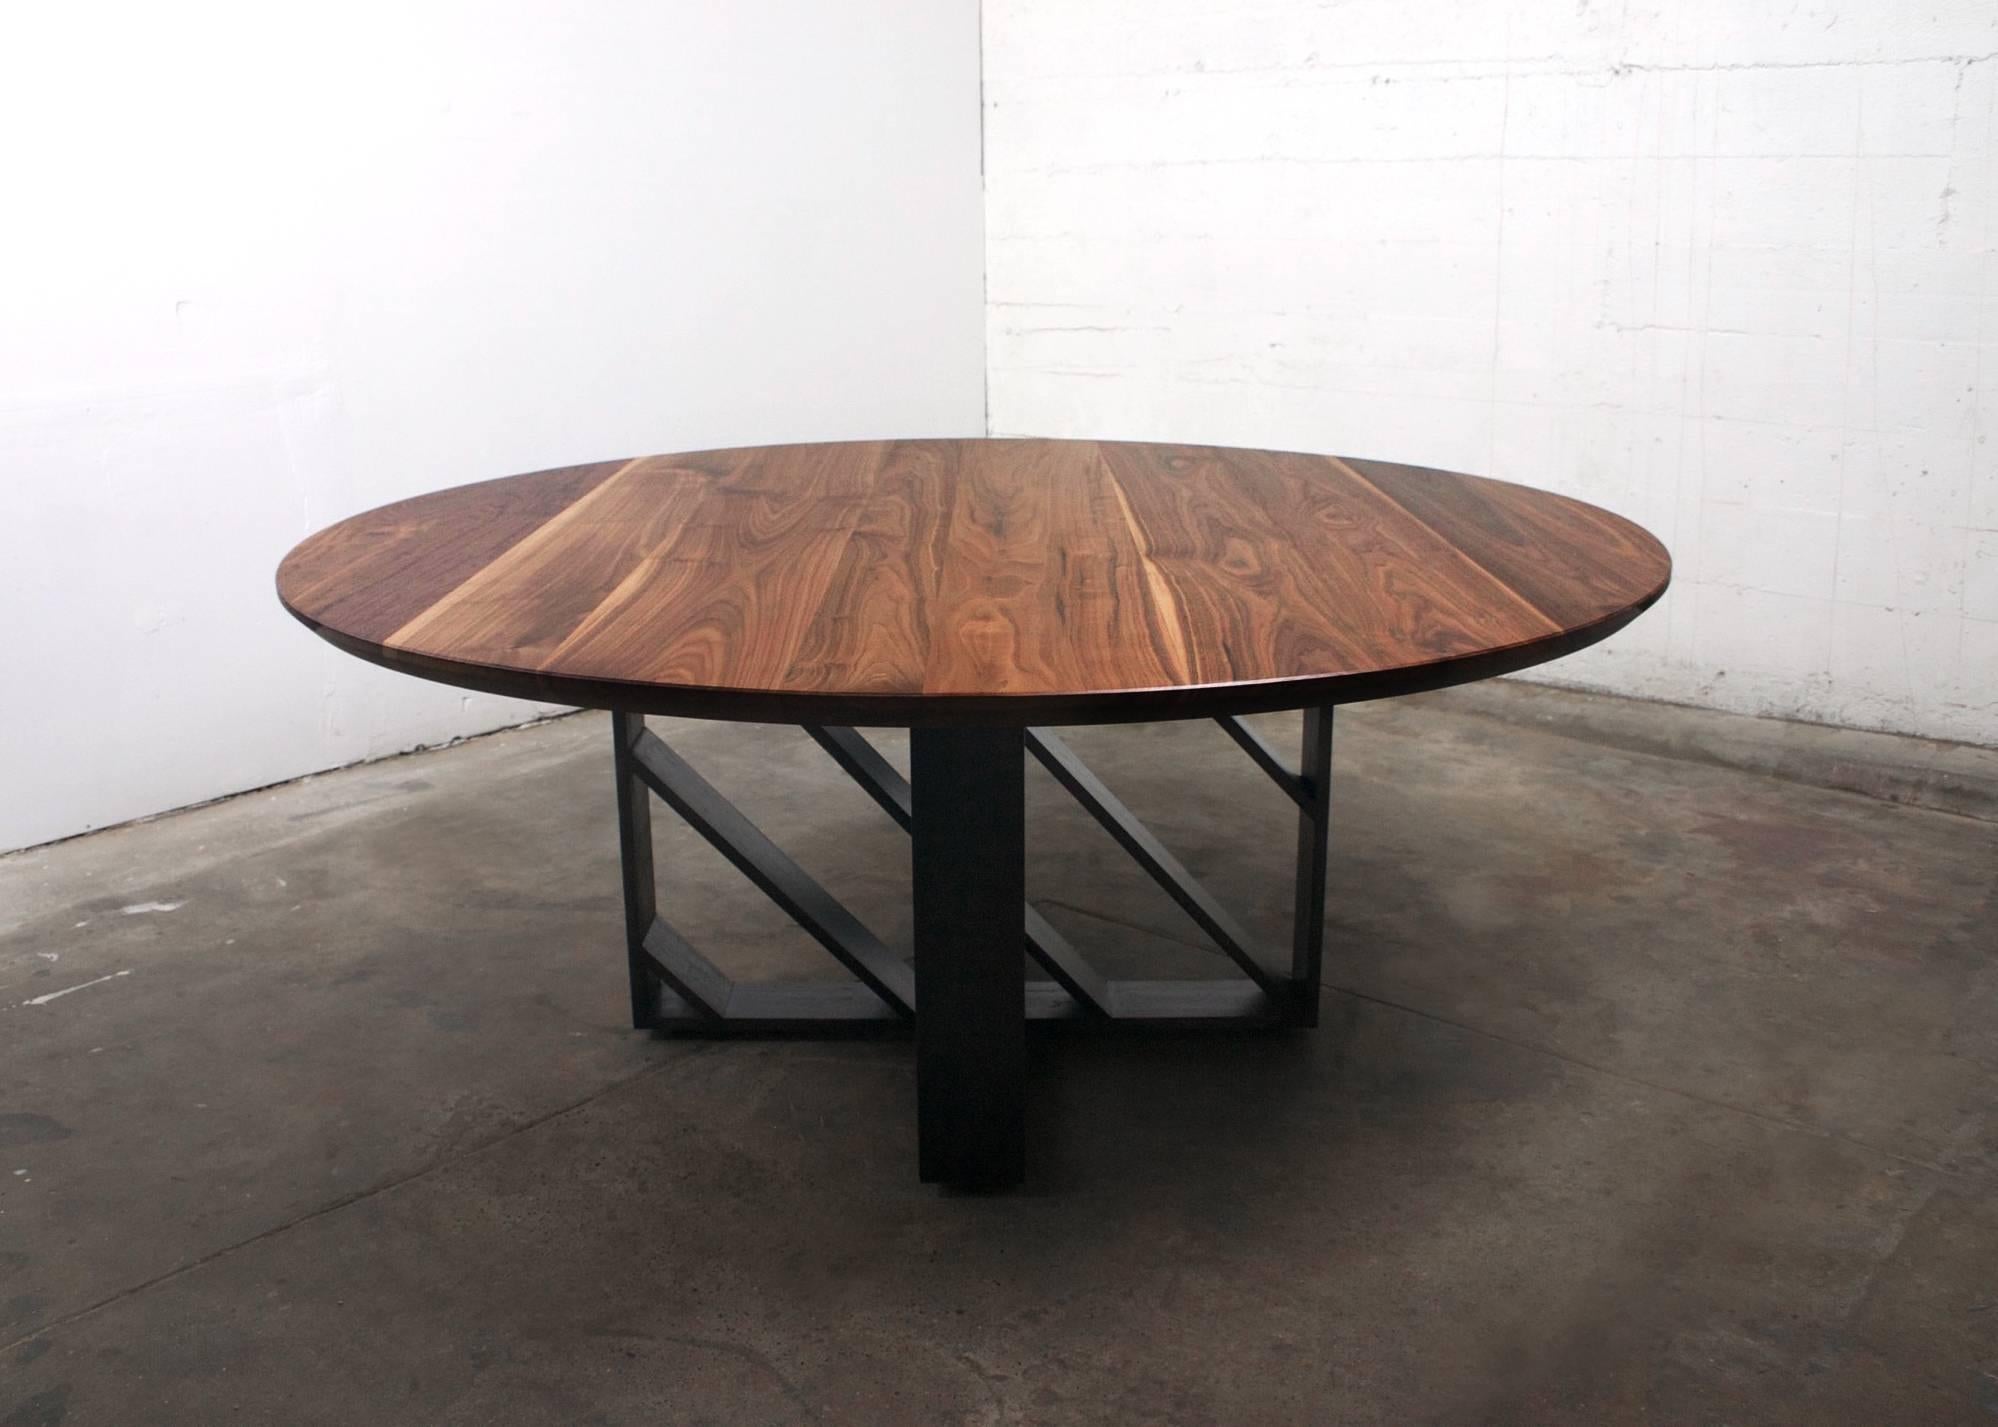 Dieser moderne Tisch aus Stahl und Holz sieht aus jedem Blickwinkel anders aus, weil die Stahlebenen Licht und Schatten bewegen. Hergestellt aus amerikanischem Schwarznussbaum und 1/2